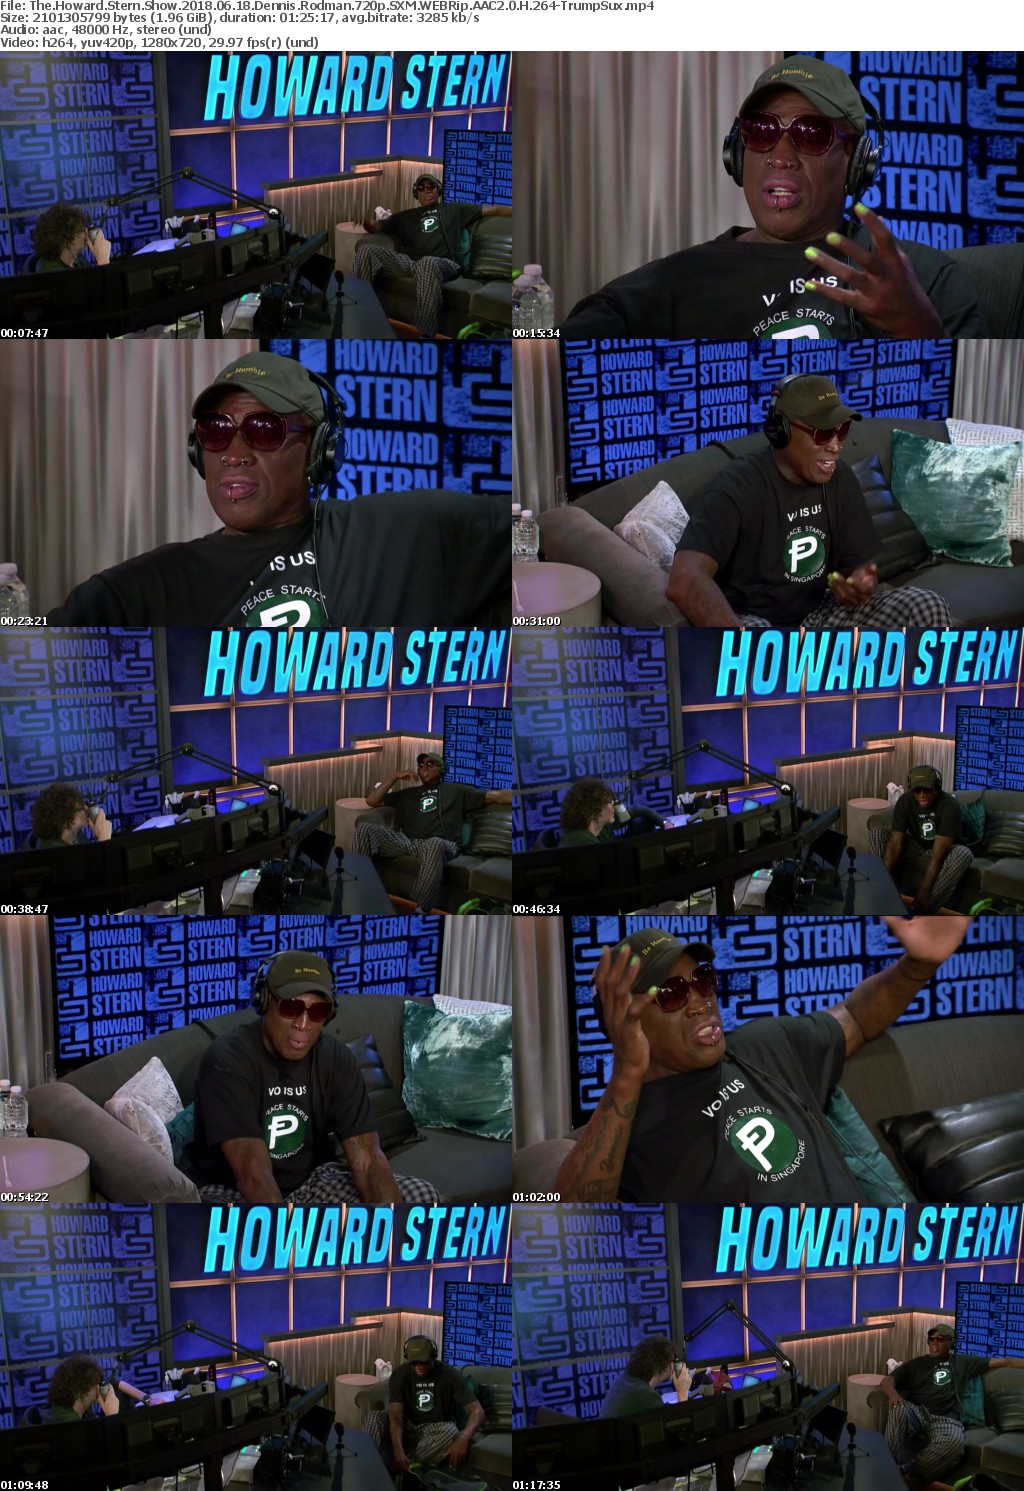 Howard Stern Show 2018 06 18 Dennis Rodman 720p Dbaum2